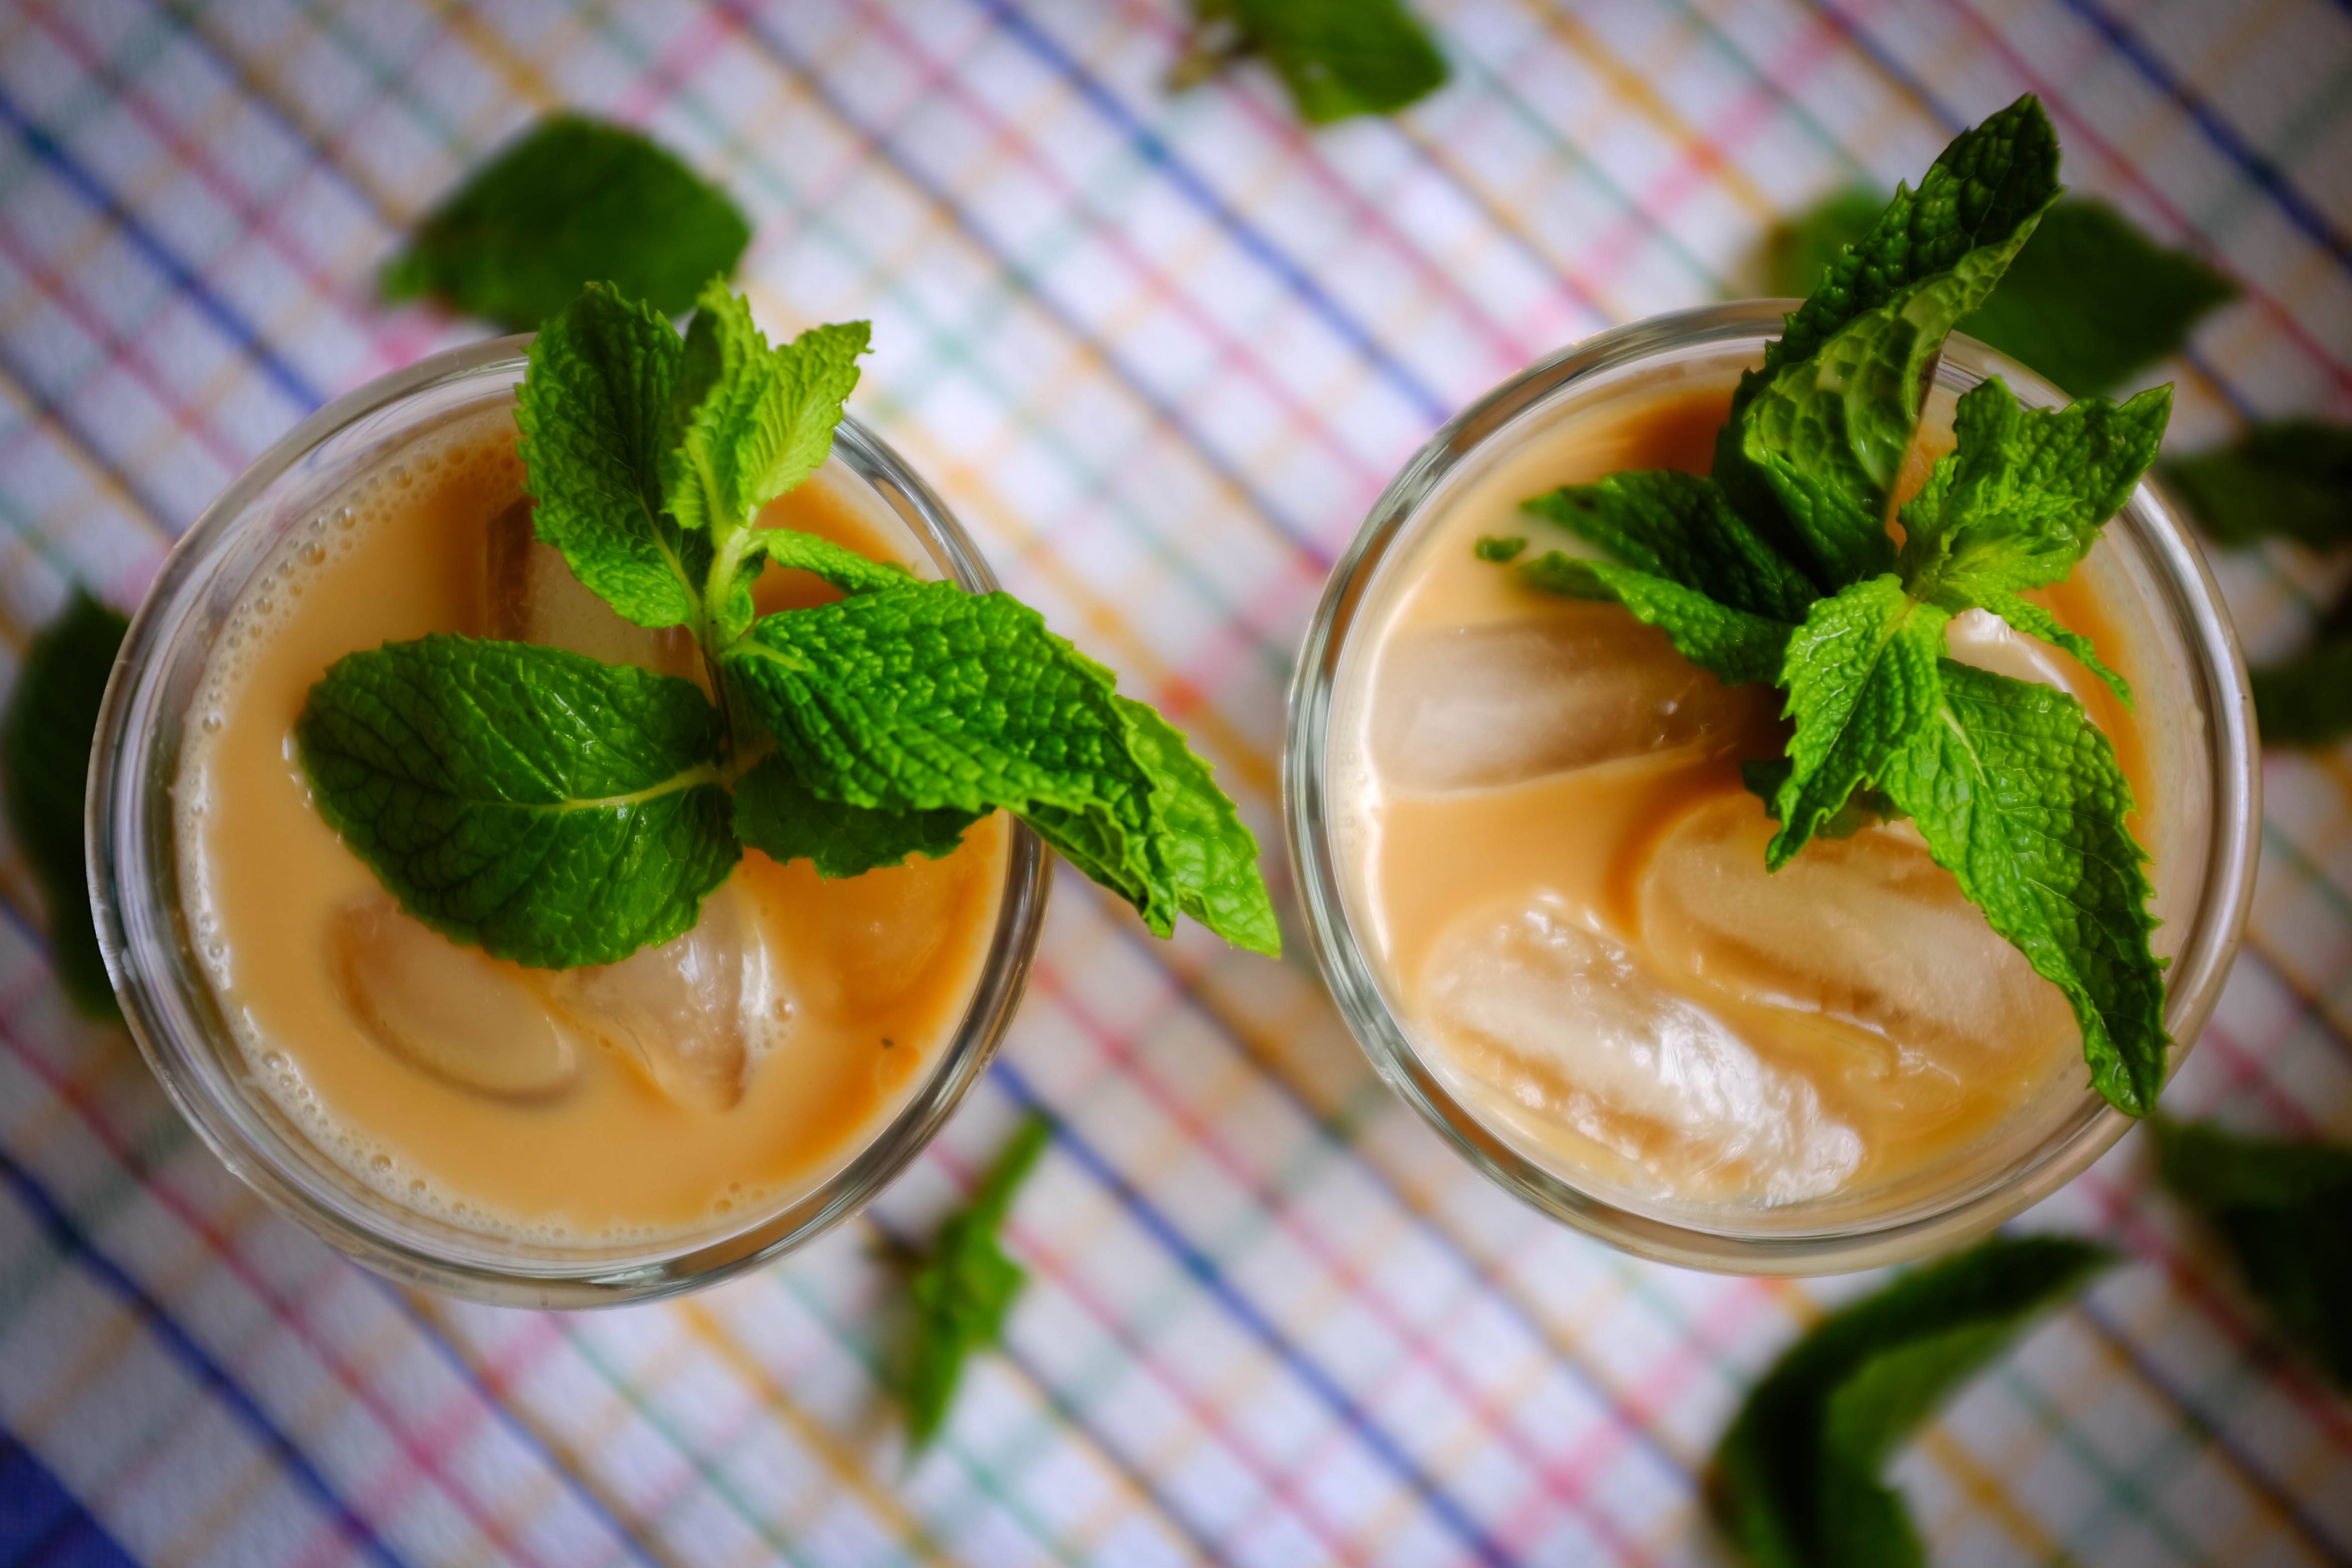 Кофе с мятой – рецепты со свежими и сушеными листьями